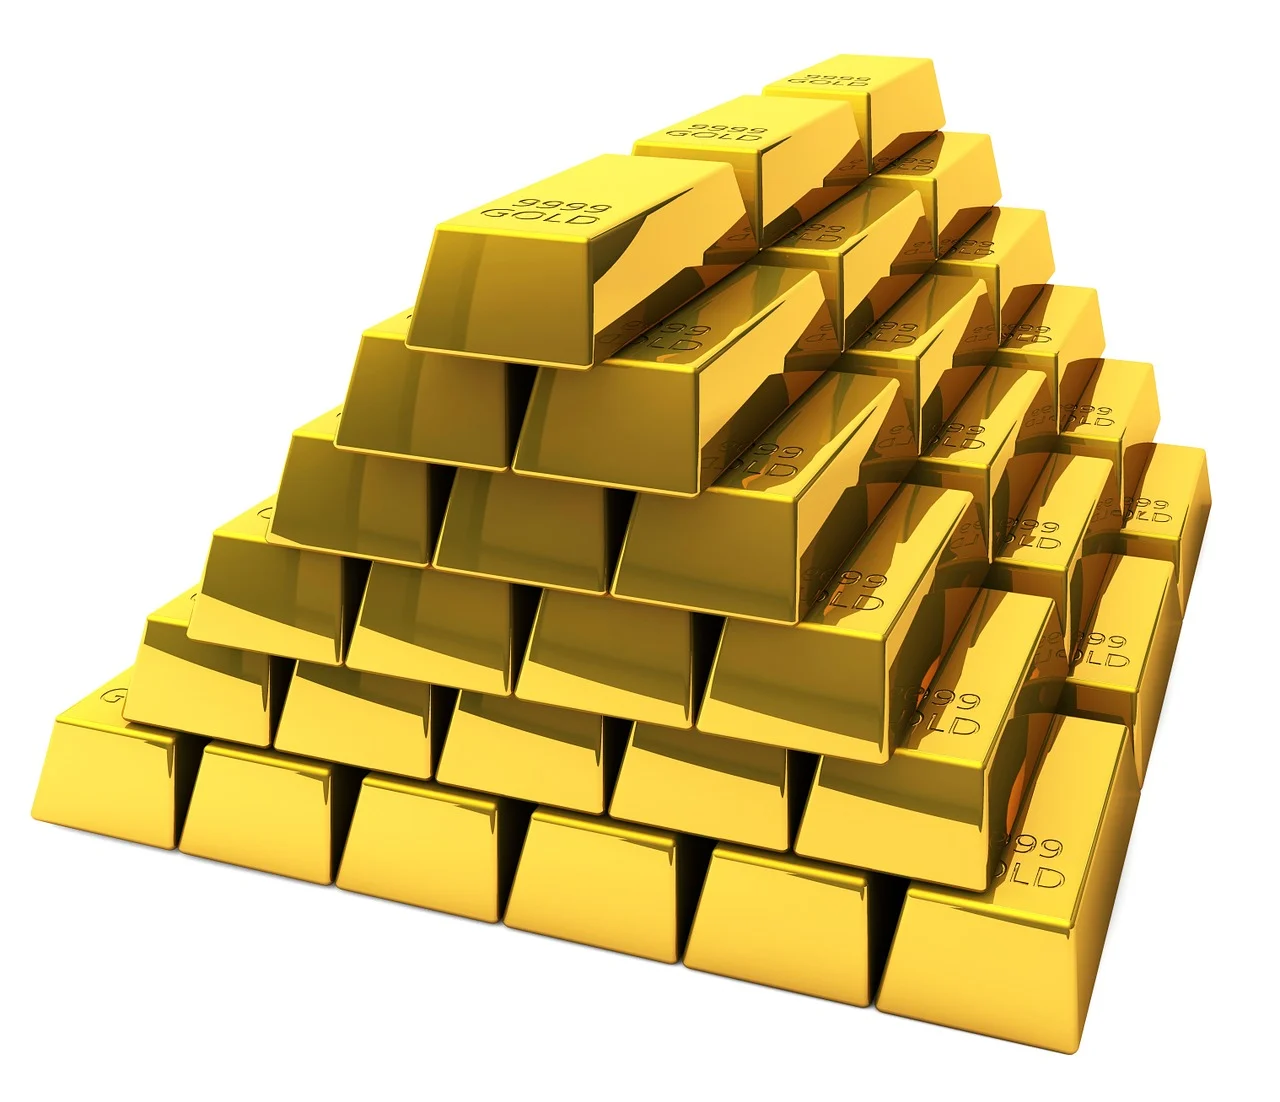 Cara Investasi Emas Antam bagi Pemula agar Menguntungkan